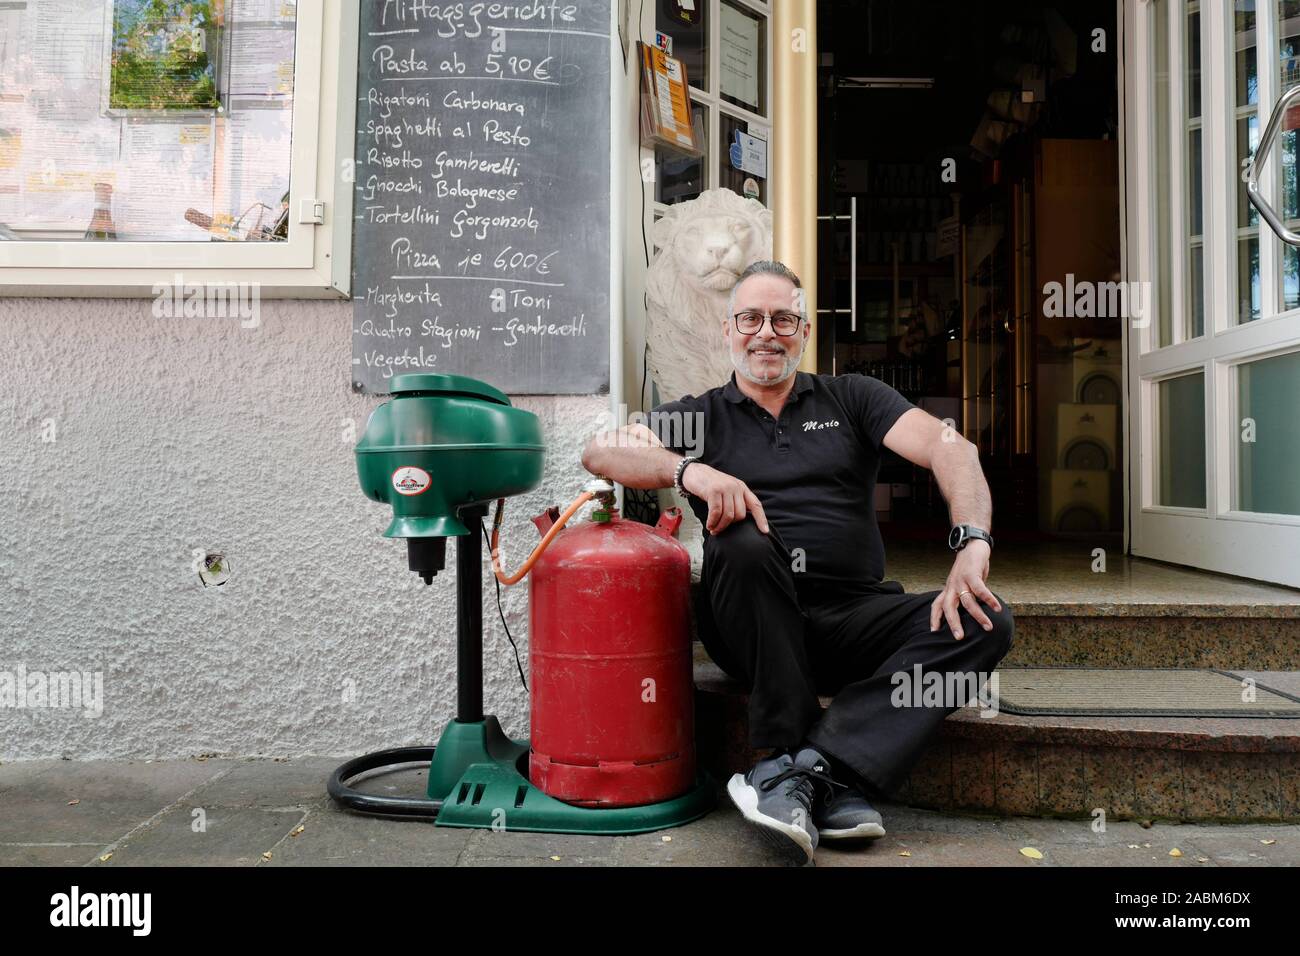 Mario Arbia, proprietario del ristorante italiano "La Gondola' in Dießen am  Ammersee, ha acquistato un dispositivo che attira le zanzare dal profumo  artificiale in una trappola. [Traduzione automatizzata] Foto stock - Alamy